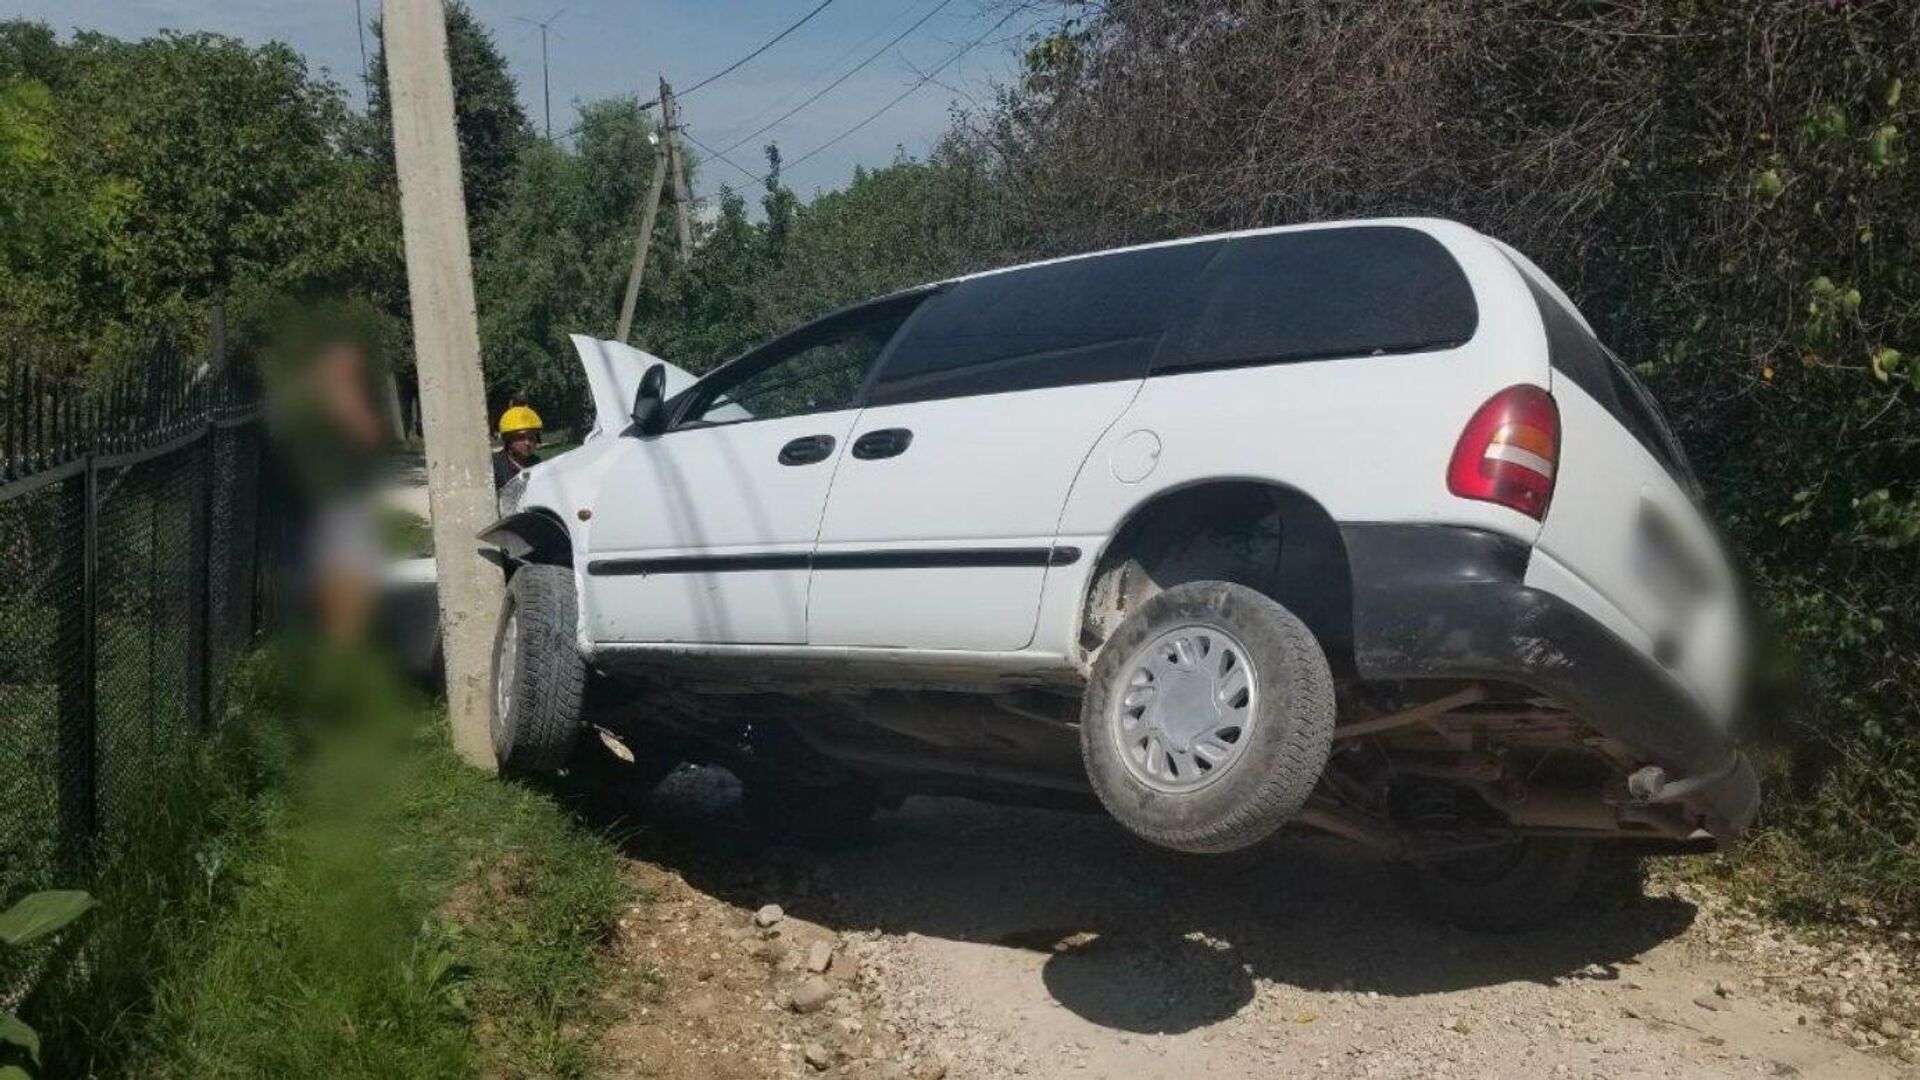 Accident grav la Ocnița: șoferul automobilului a decedat pe loc - Sputnik Moldova, 1920, 16.08.2021